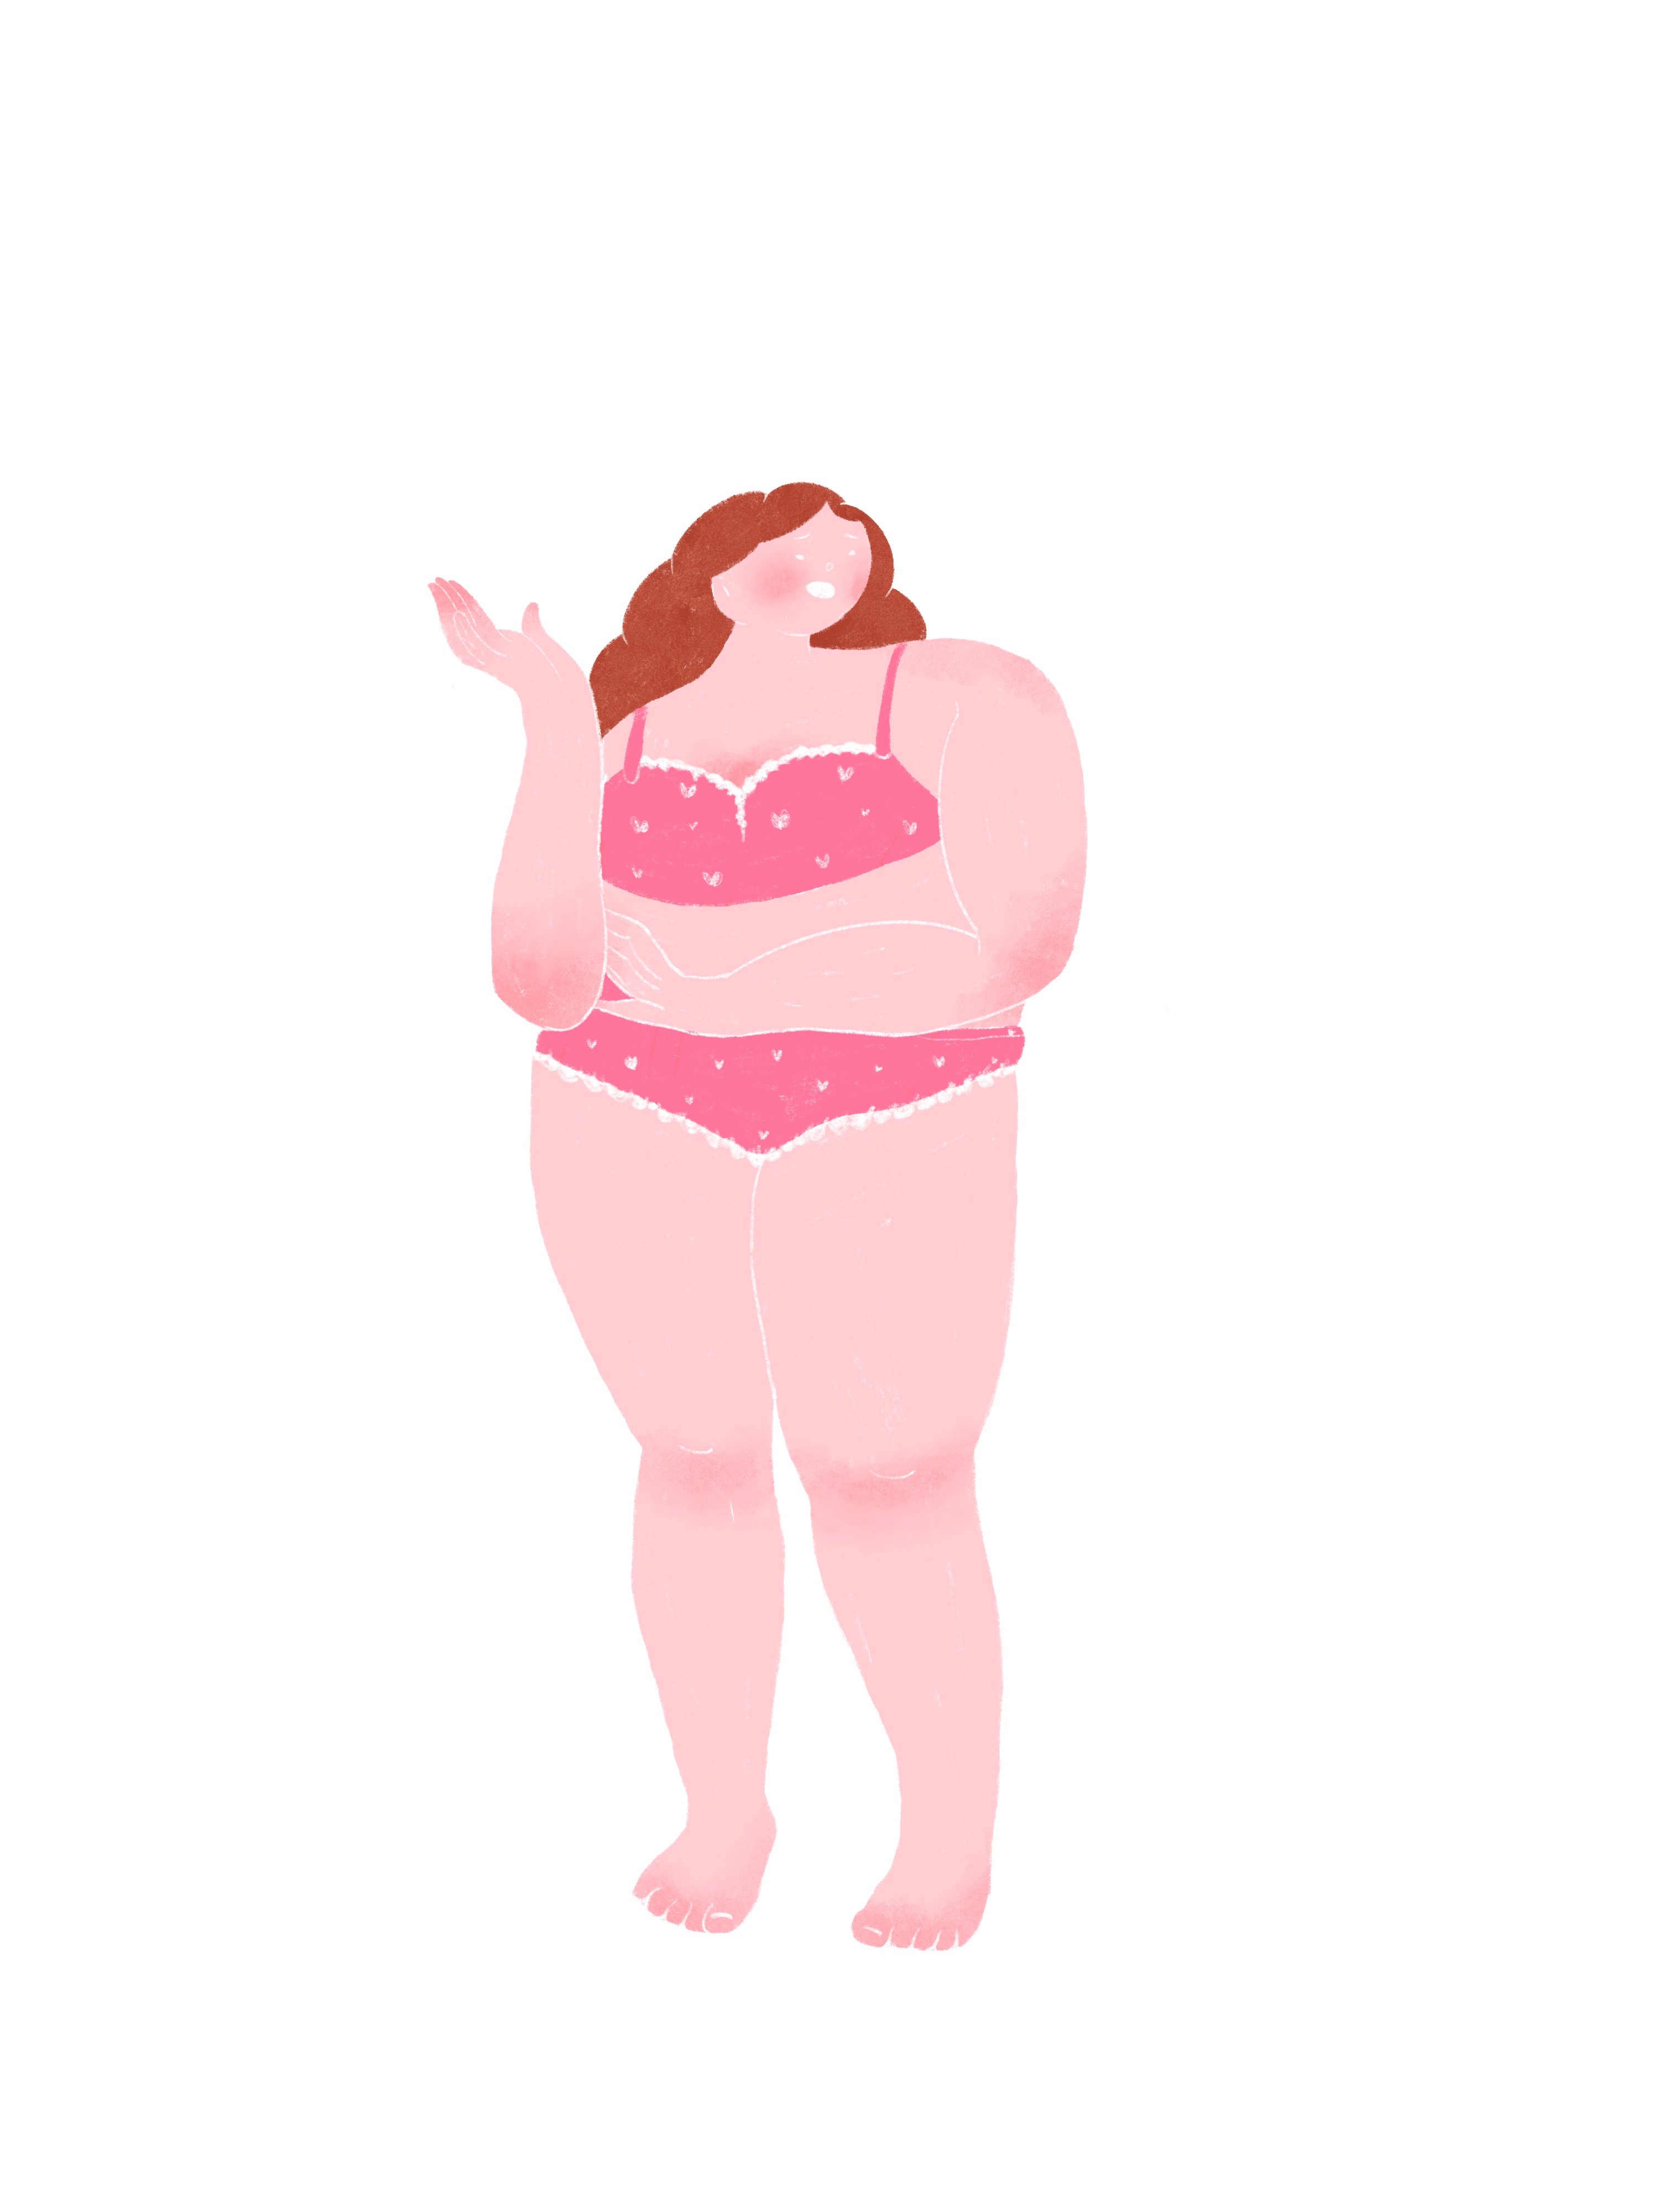 胖胖的身材卡通图片图片